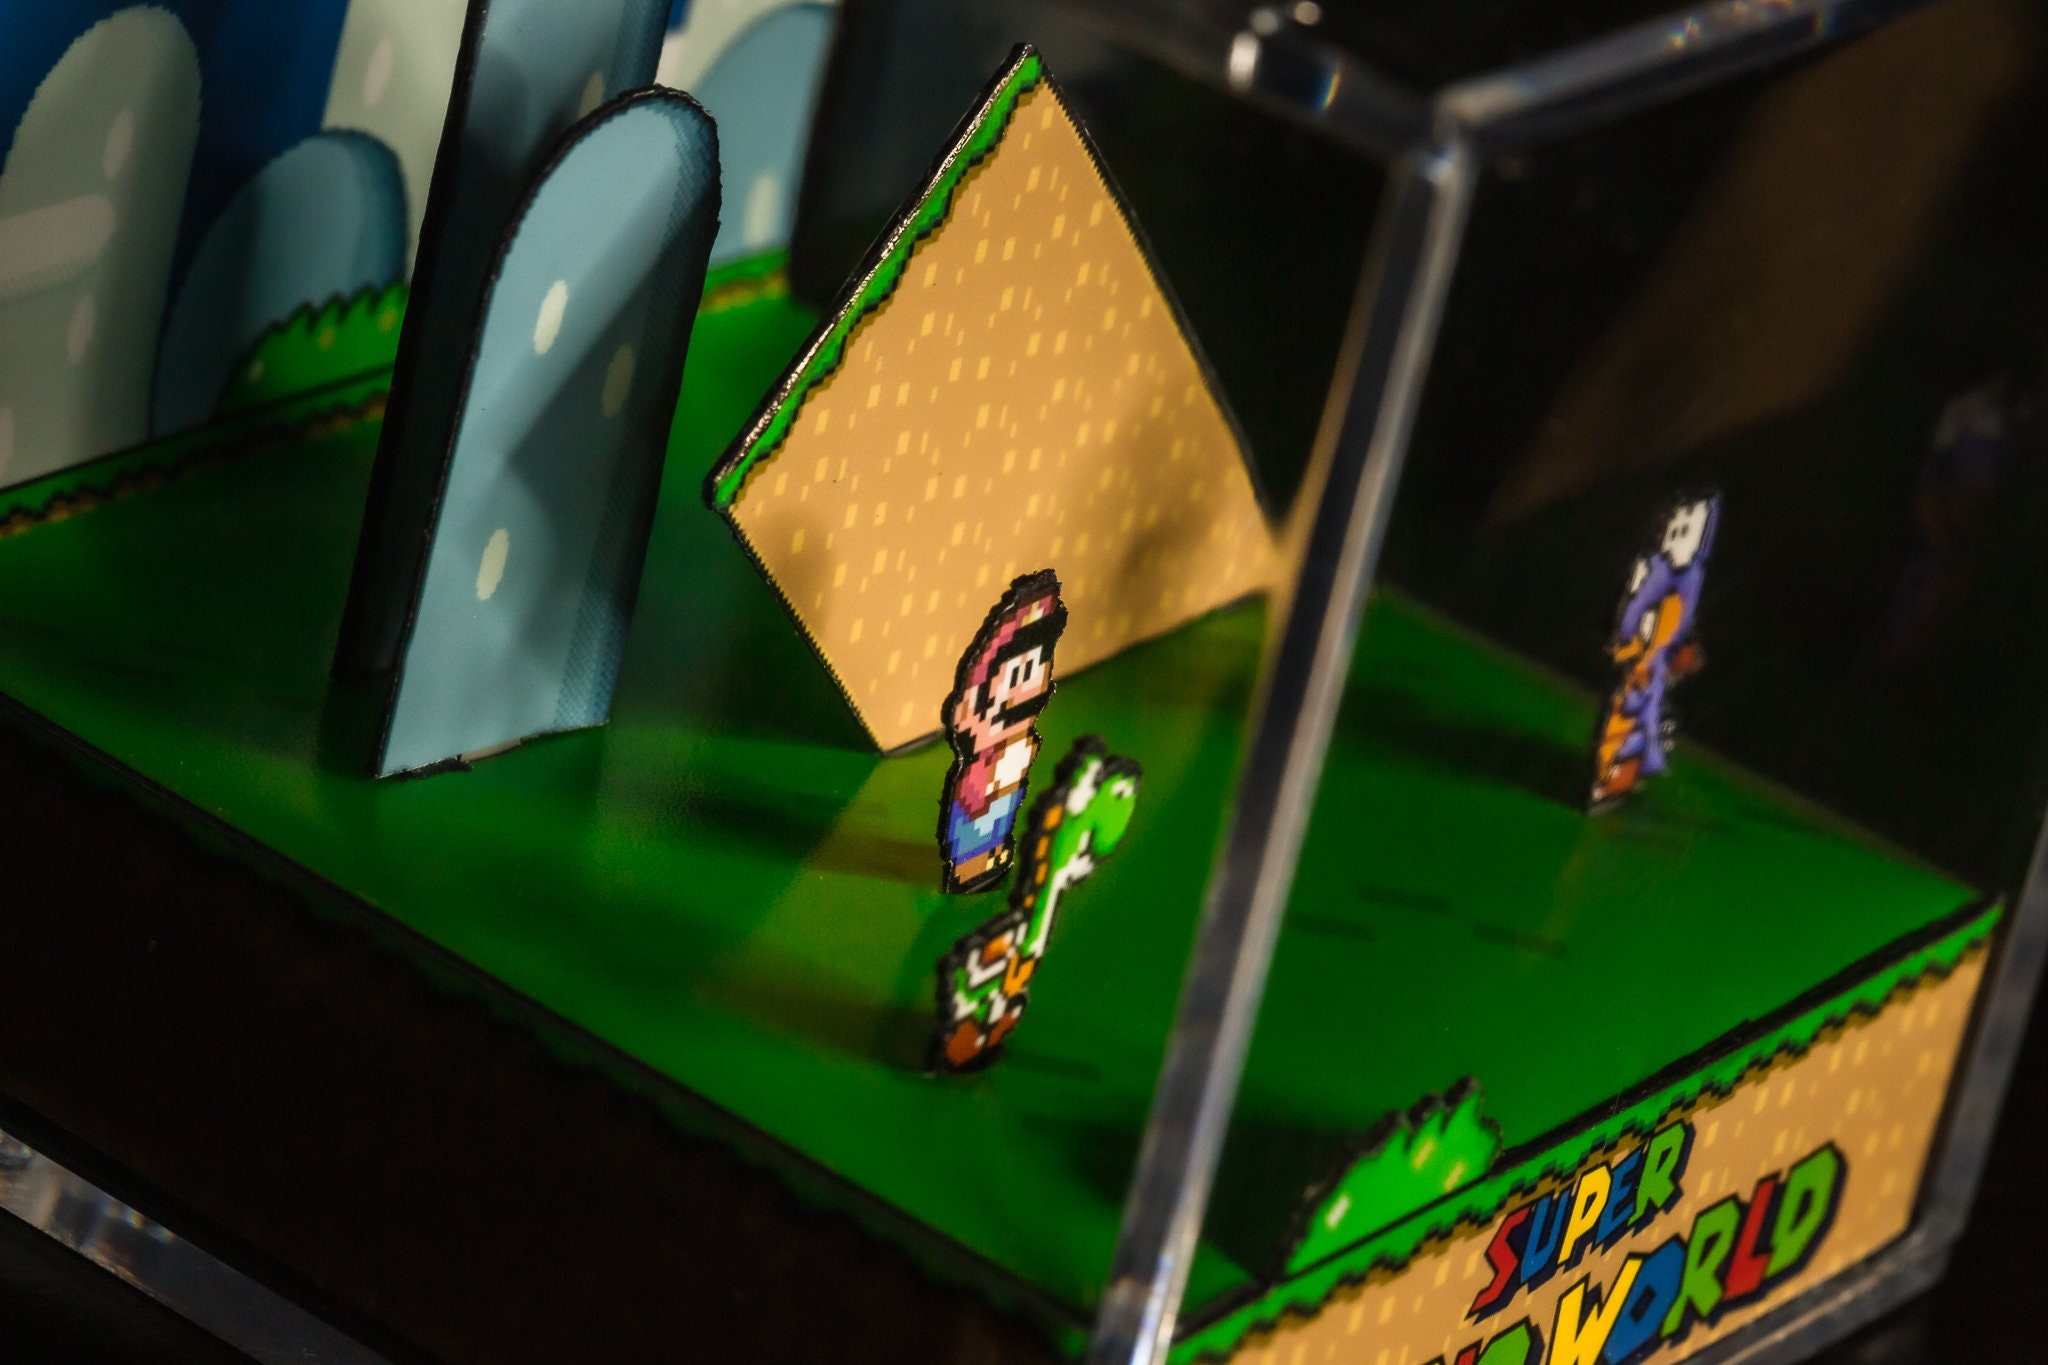 Super Mario 64 Diorama Cube: Baby Penguin - Video Game Room Decoration